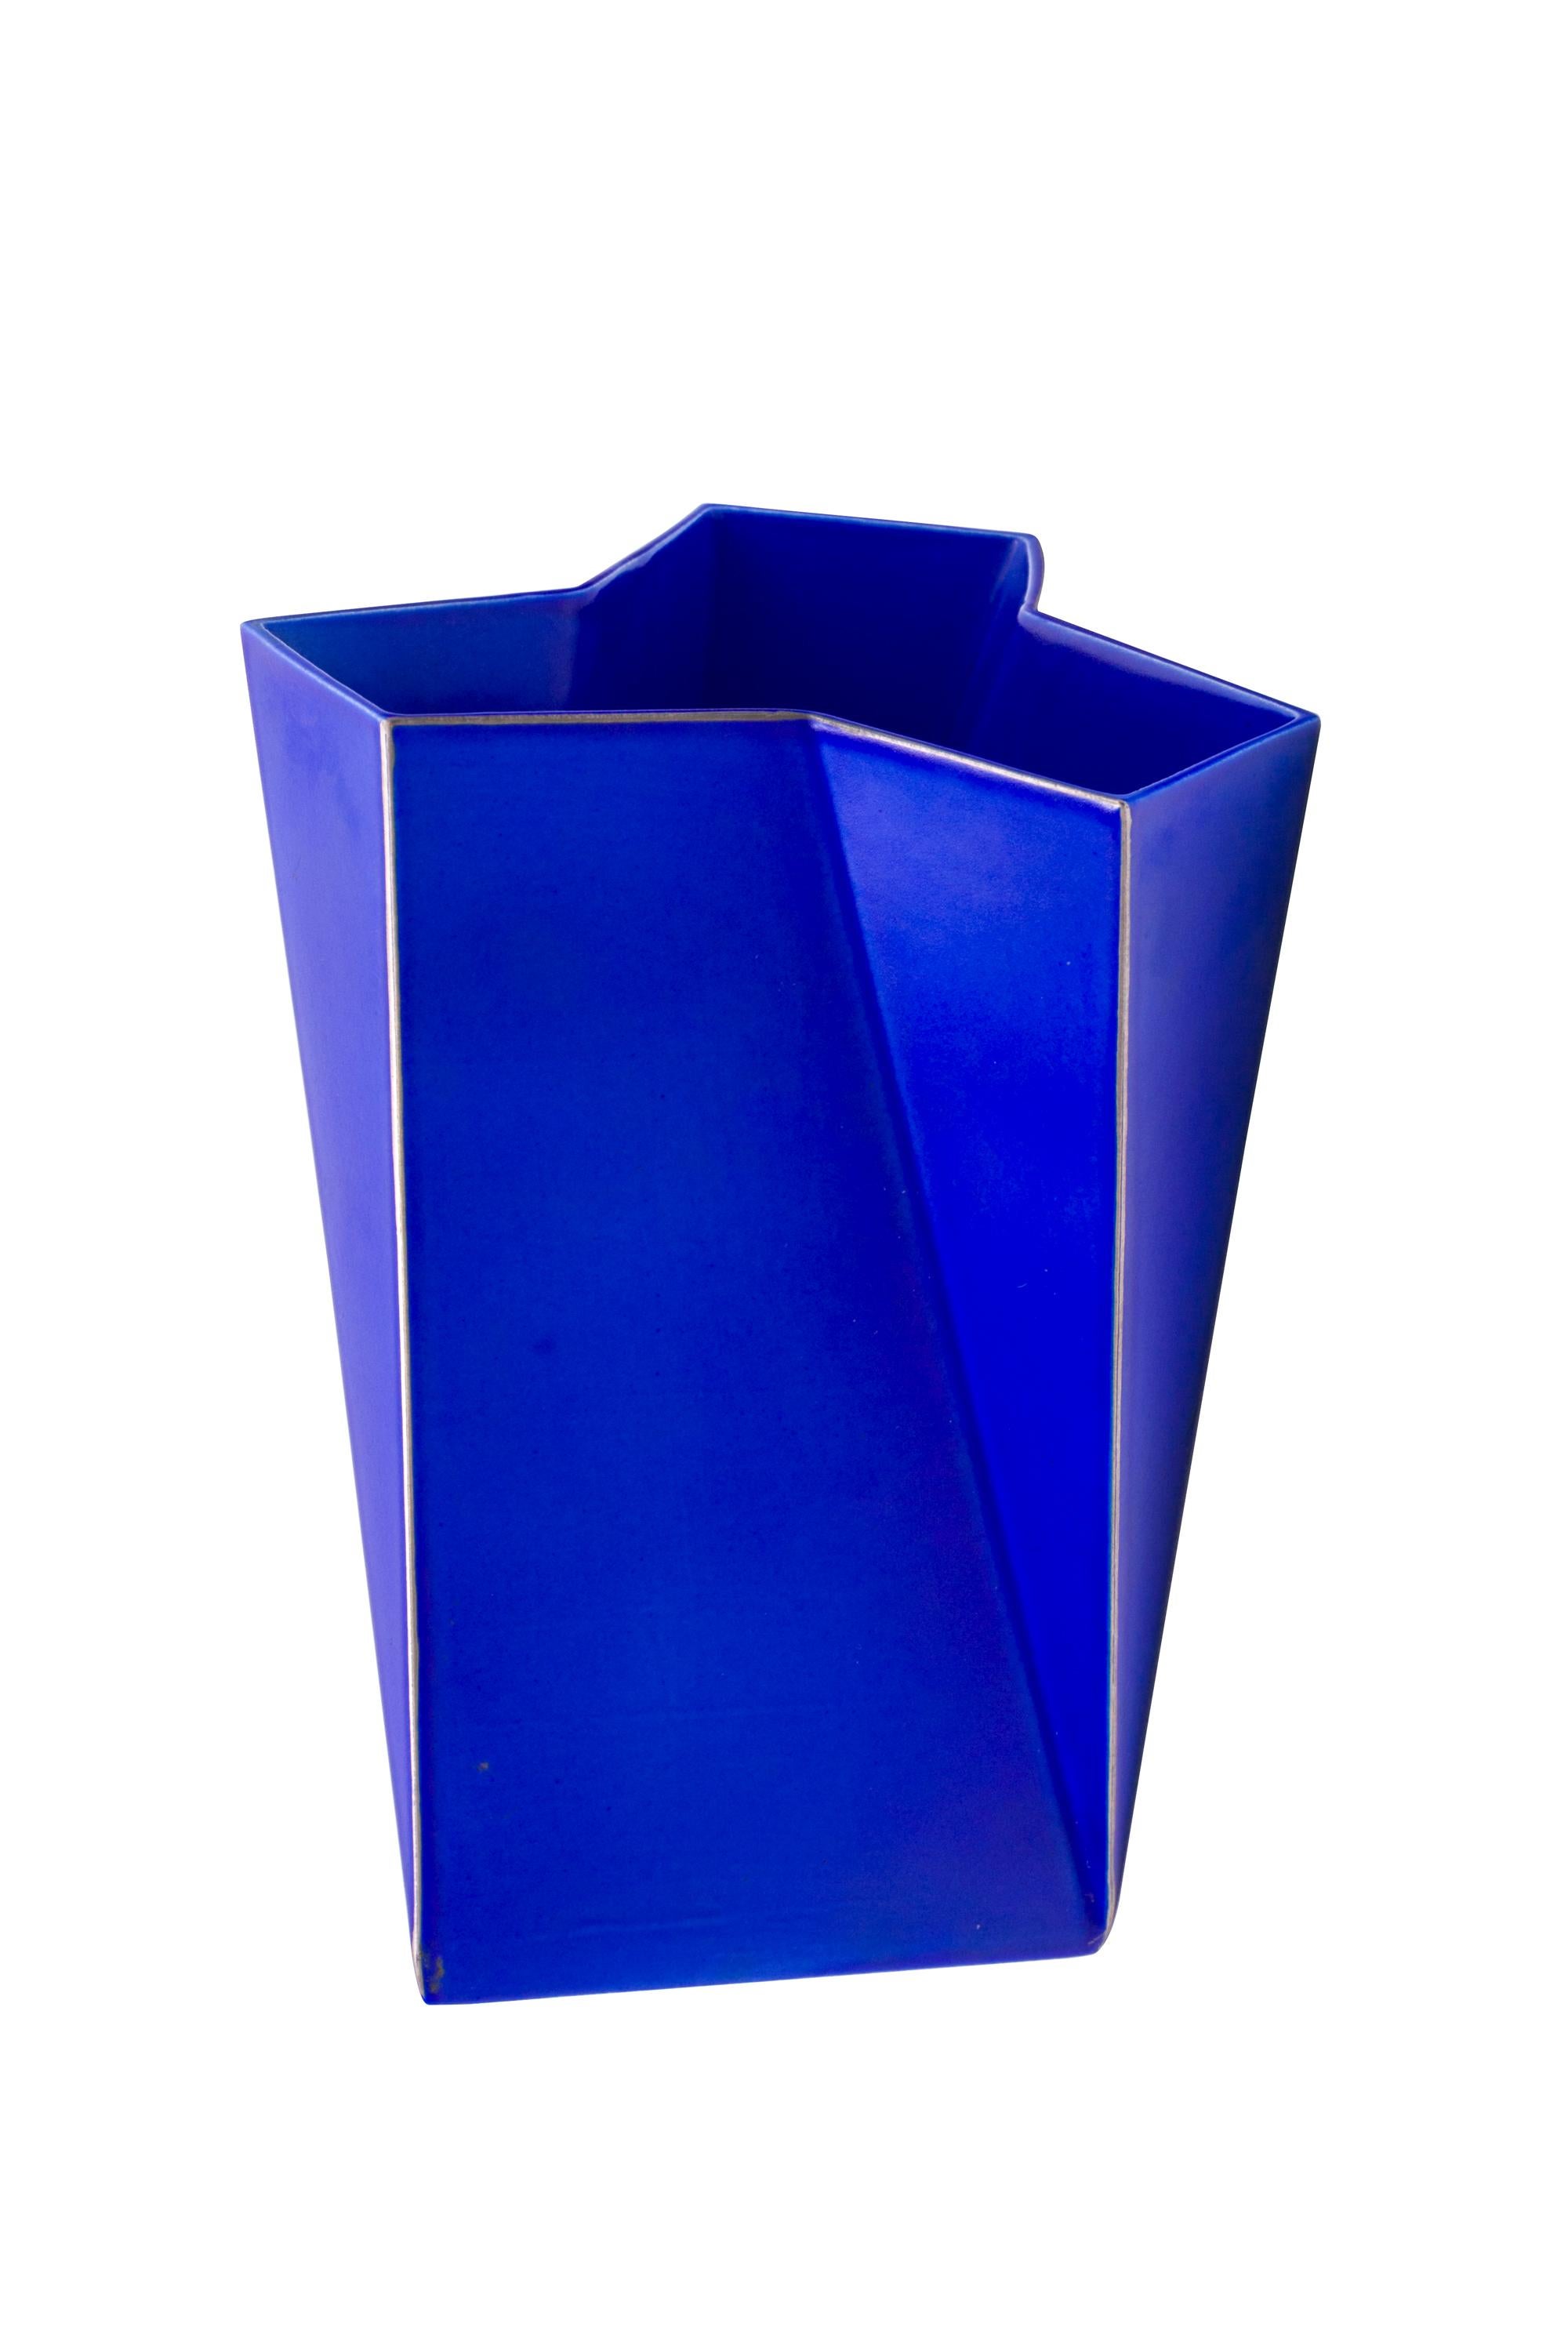 Scandinavian Modern Bing & Grondahl Geometric Blue Porcelain Futura Vase by Else Kamp, Denmark 1980s